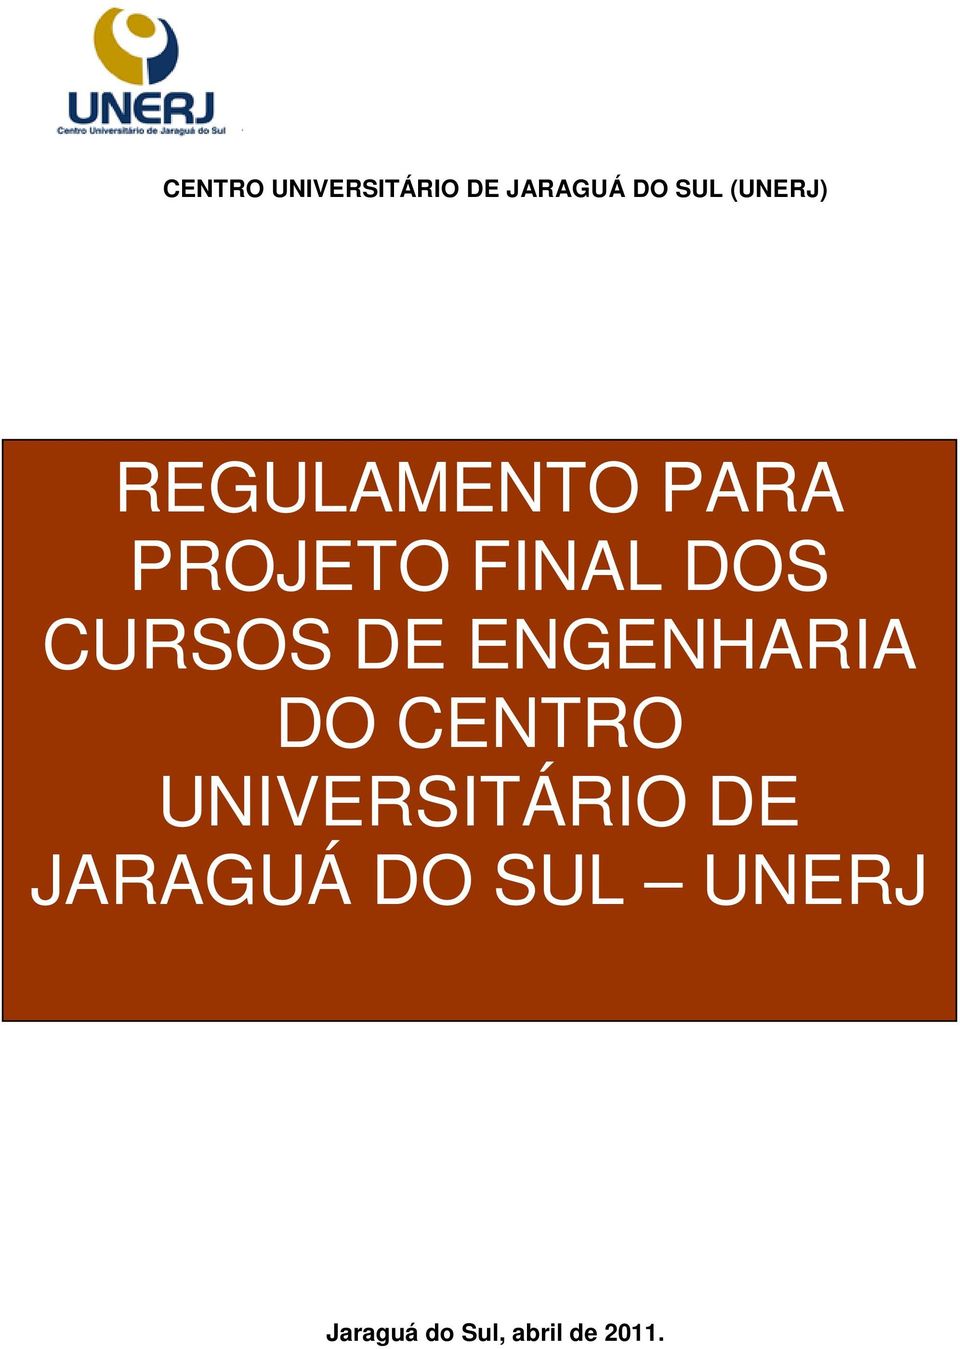 CURSOS DE ENGENHARIA DO CENTRO UNIVERSITÁRIO